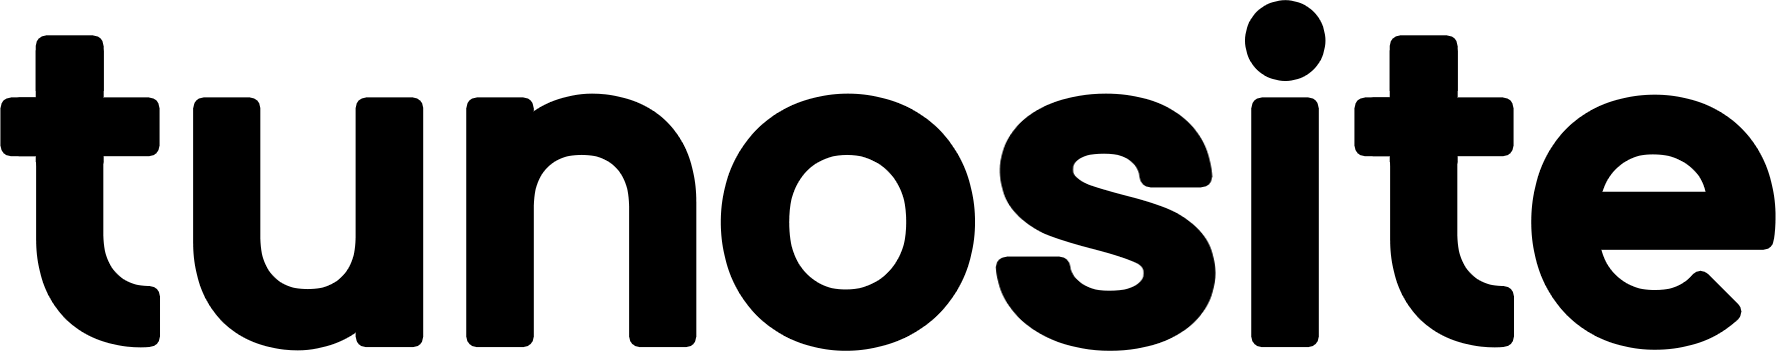 tunosite-logo